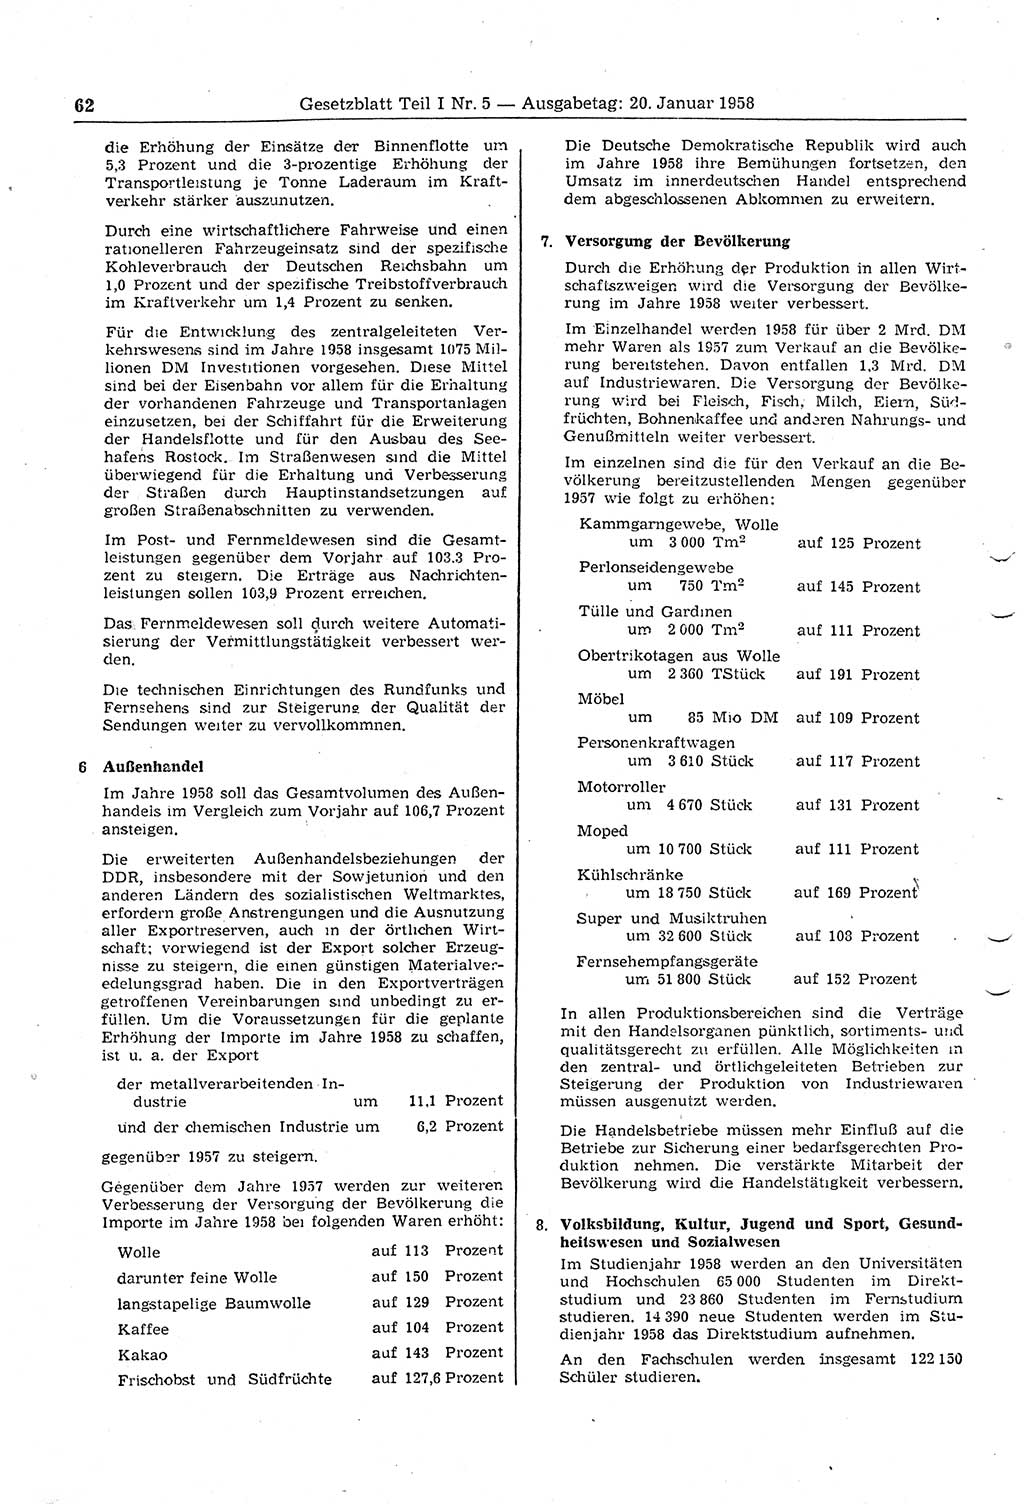 Gesetzblatt (GBl.) der Deutschen Demokratischen Republik (DDR) Teil Ⅰ 1958, Seite 62 (GBl. DDR Ⅰ 1958, S. 62)